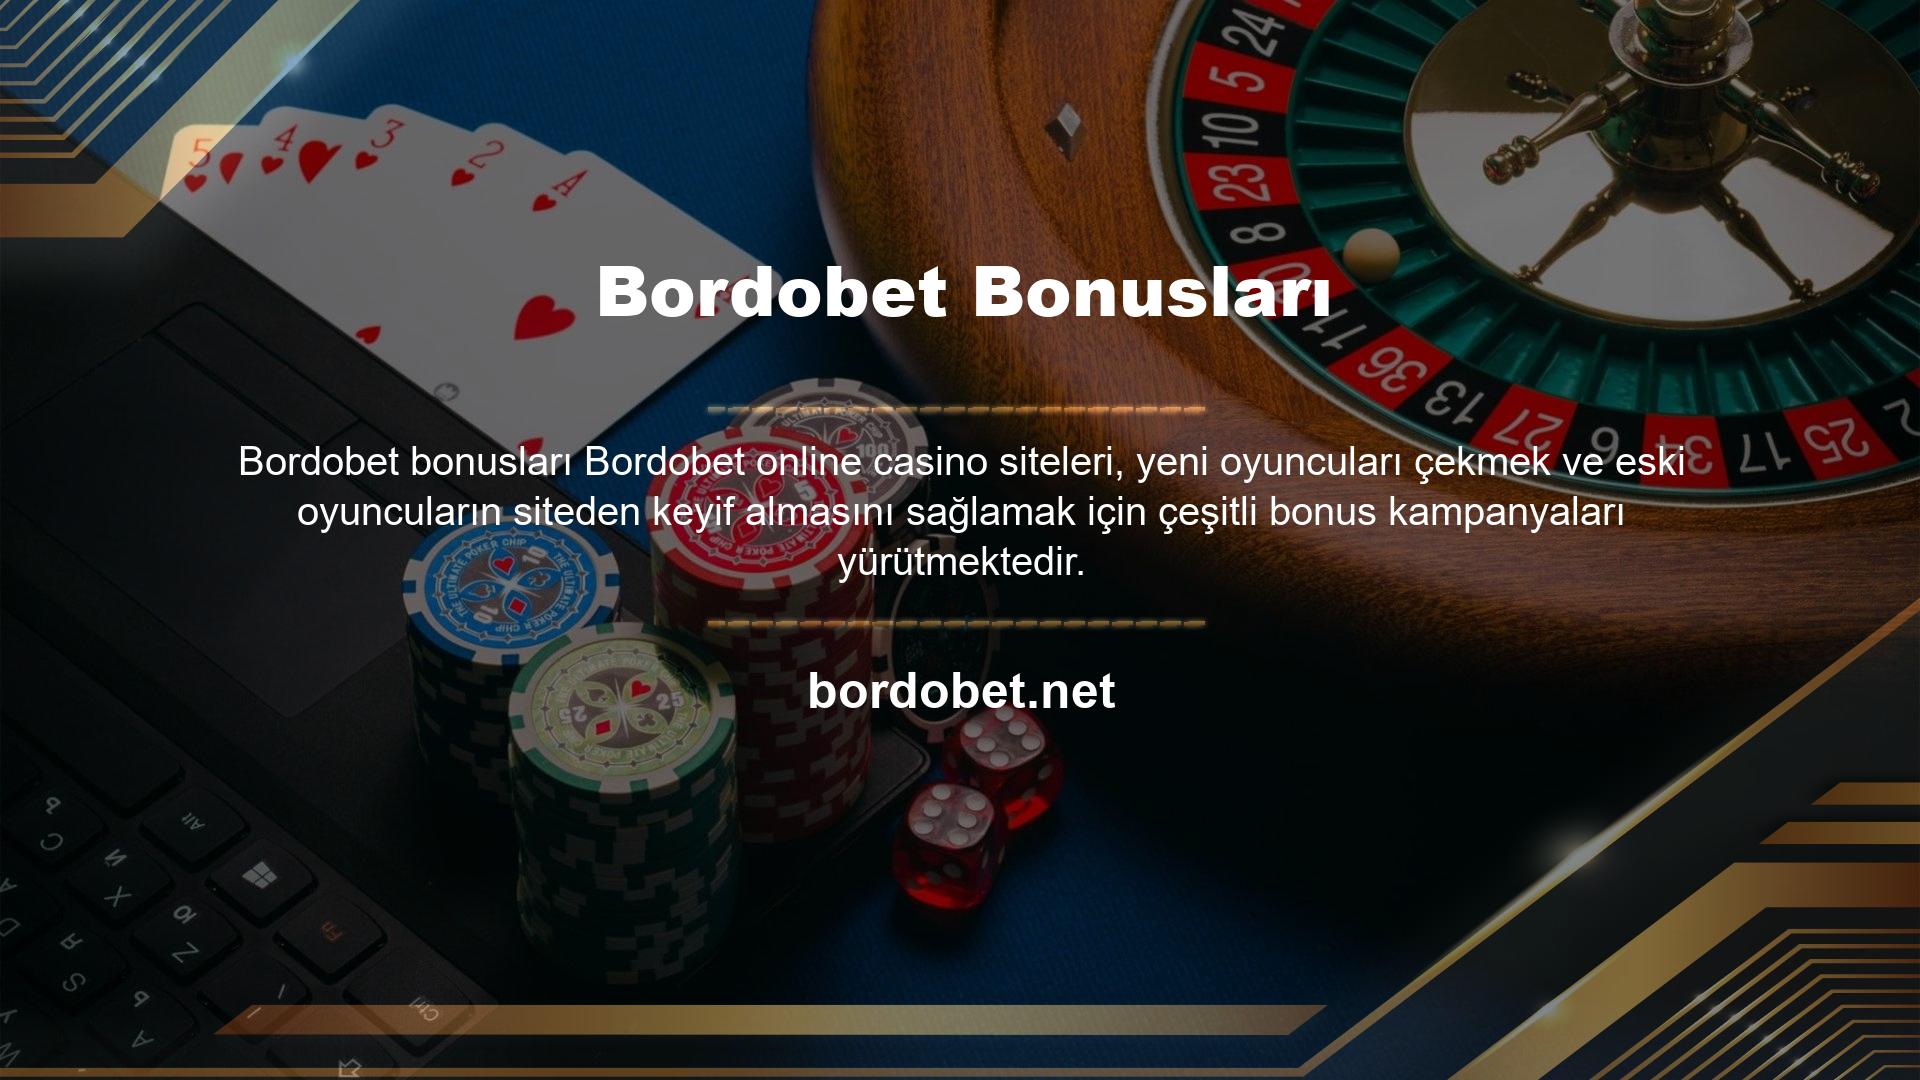 Site, bonuslar konusunda olabildiğince cömert davranıyor ve yeni oyunculara spor bahisleri ve casino oyunları için ayrı hoş geldin bonusları sunuyor